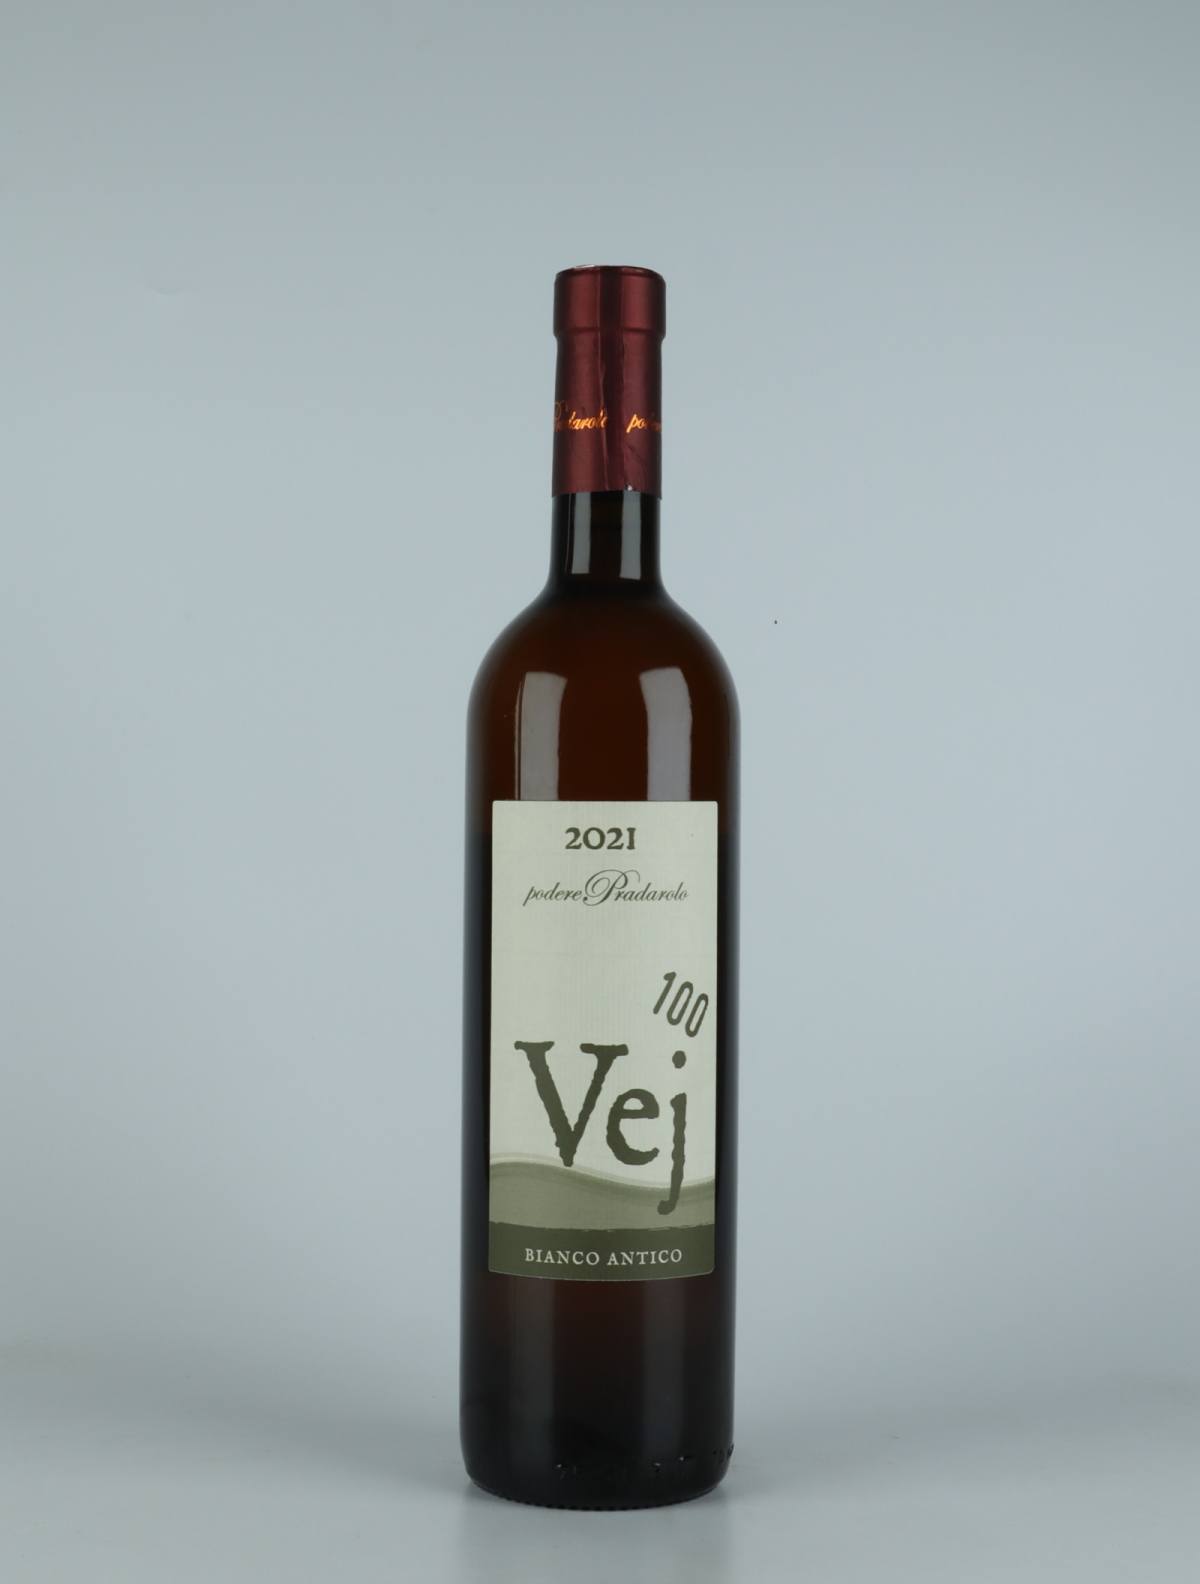 En flaske 2021 Vej 100 - Bianco Antico Orange vin fra Podere Pradarolo, Emilia-Romagna i Italien